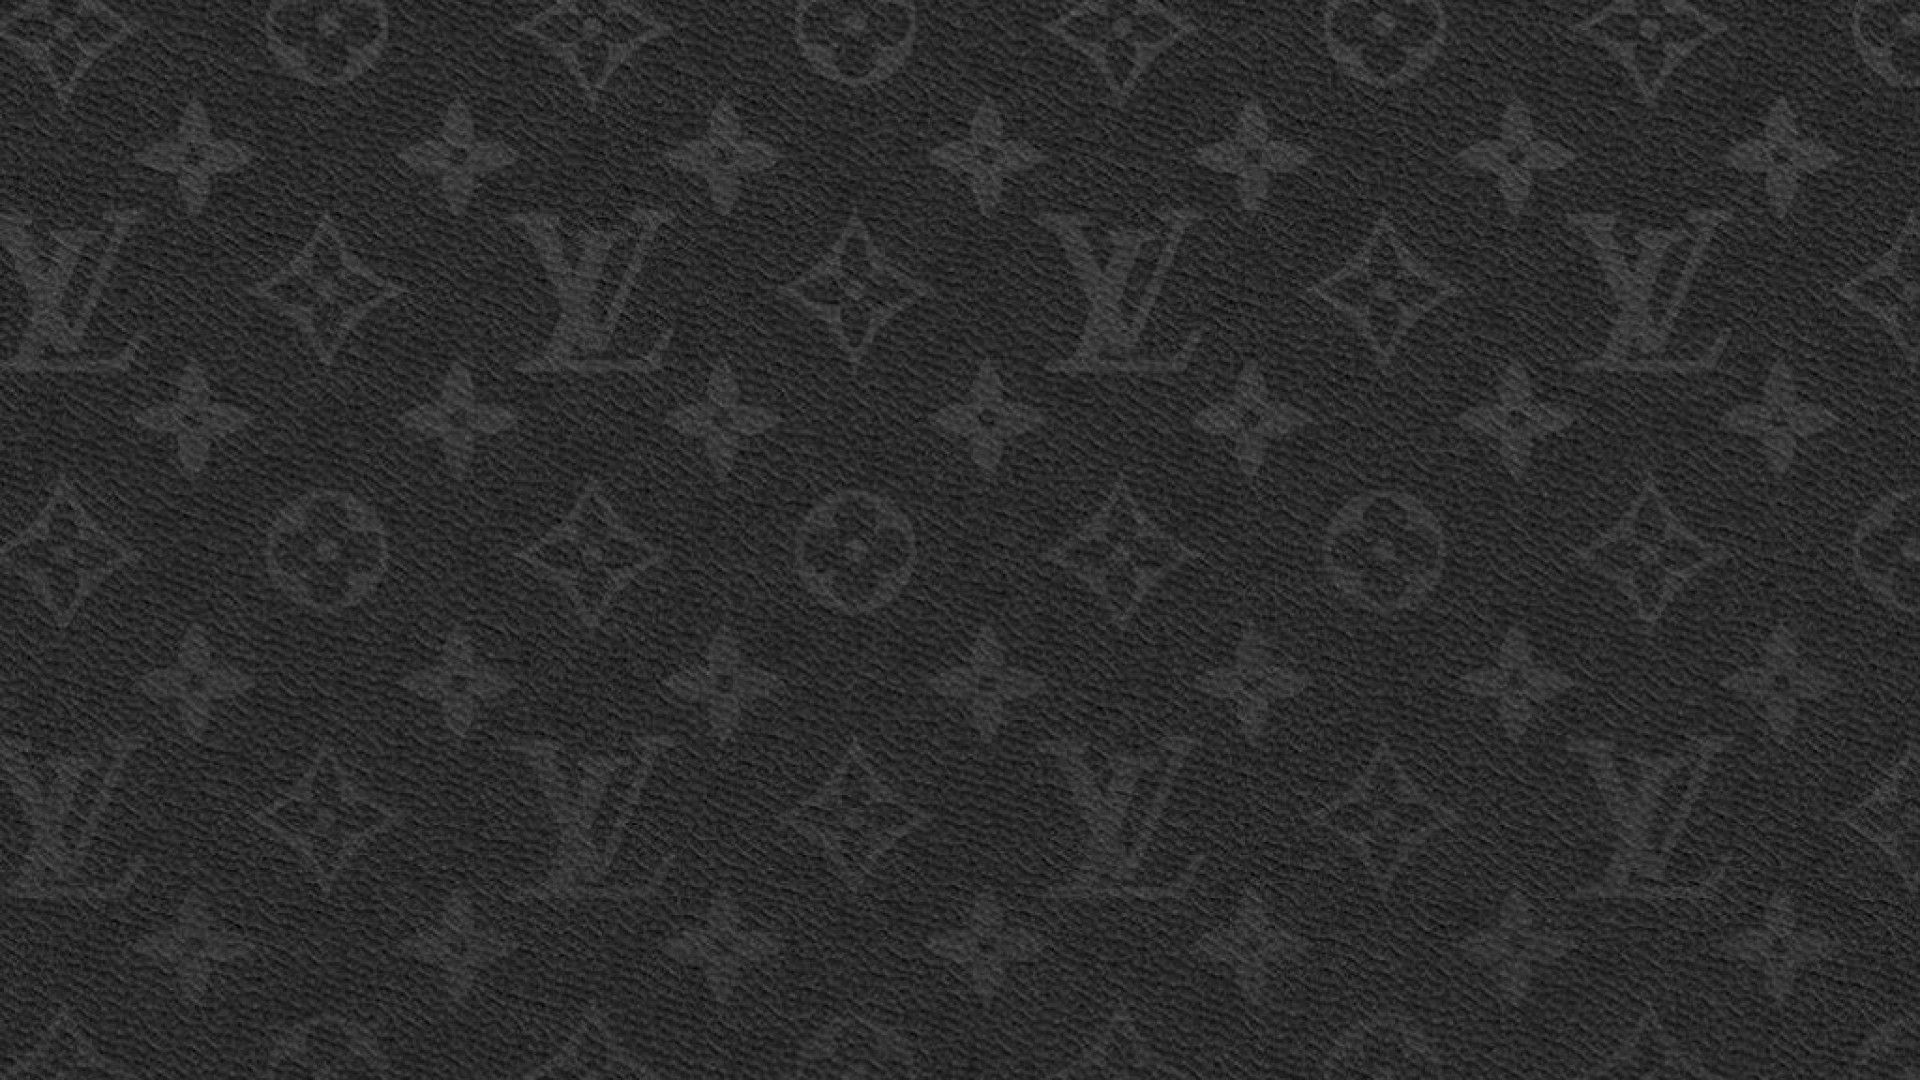 The Louis Vuitton logo  Fond d'écran téléphone, Fond d'écran